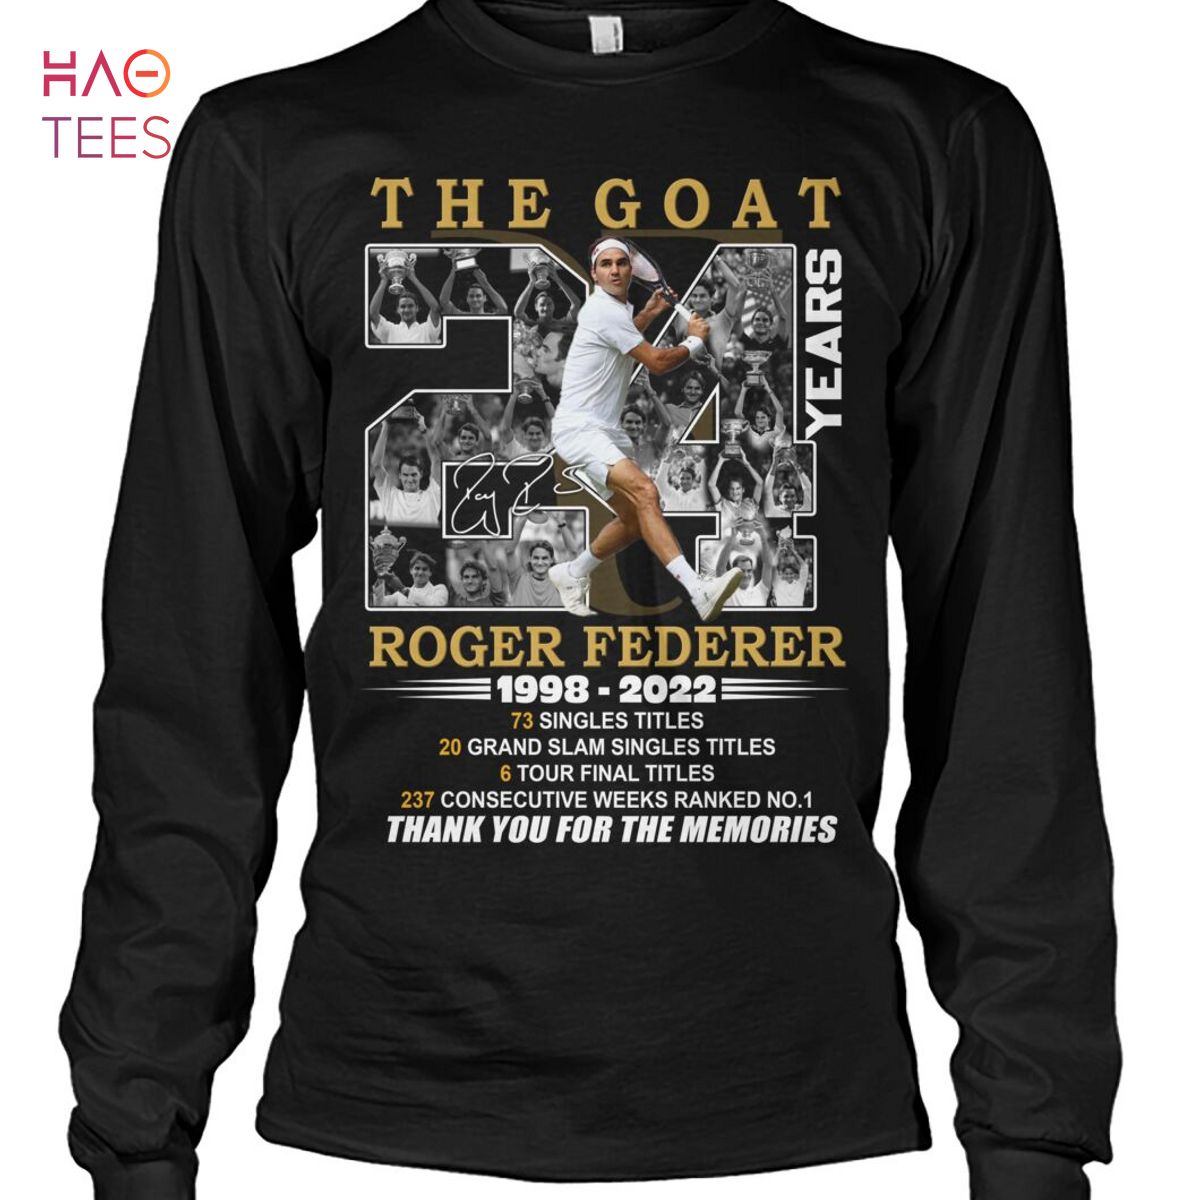 The Goat Roger Federer 1998-2022 Shirt